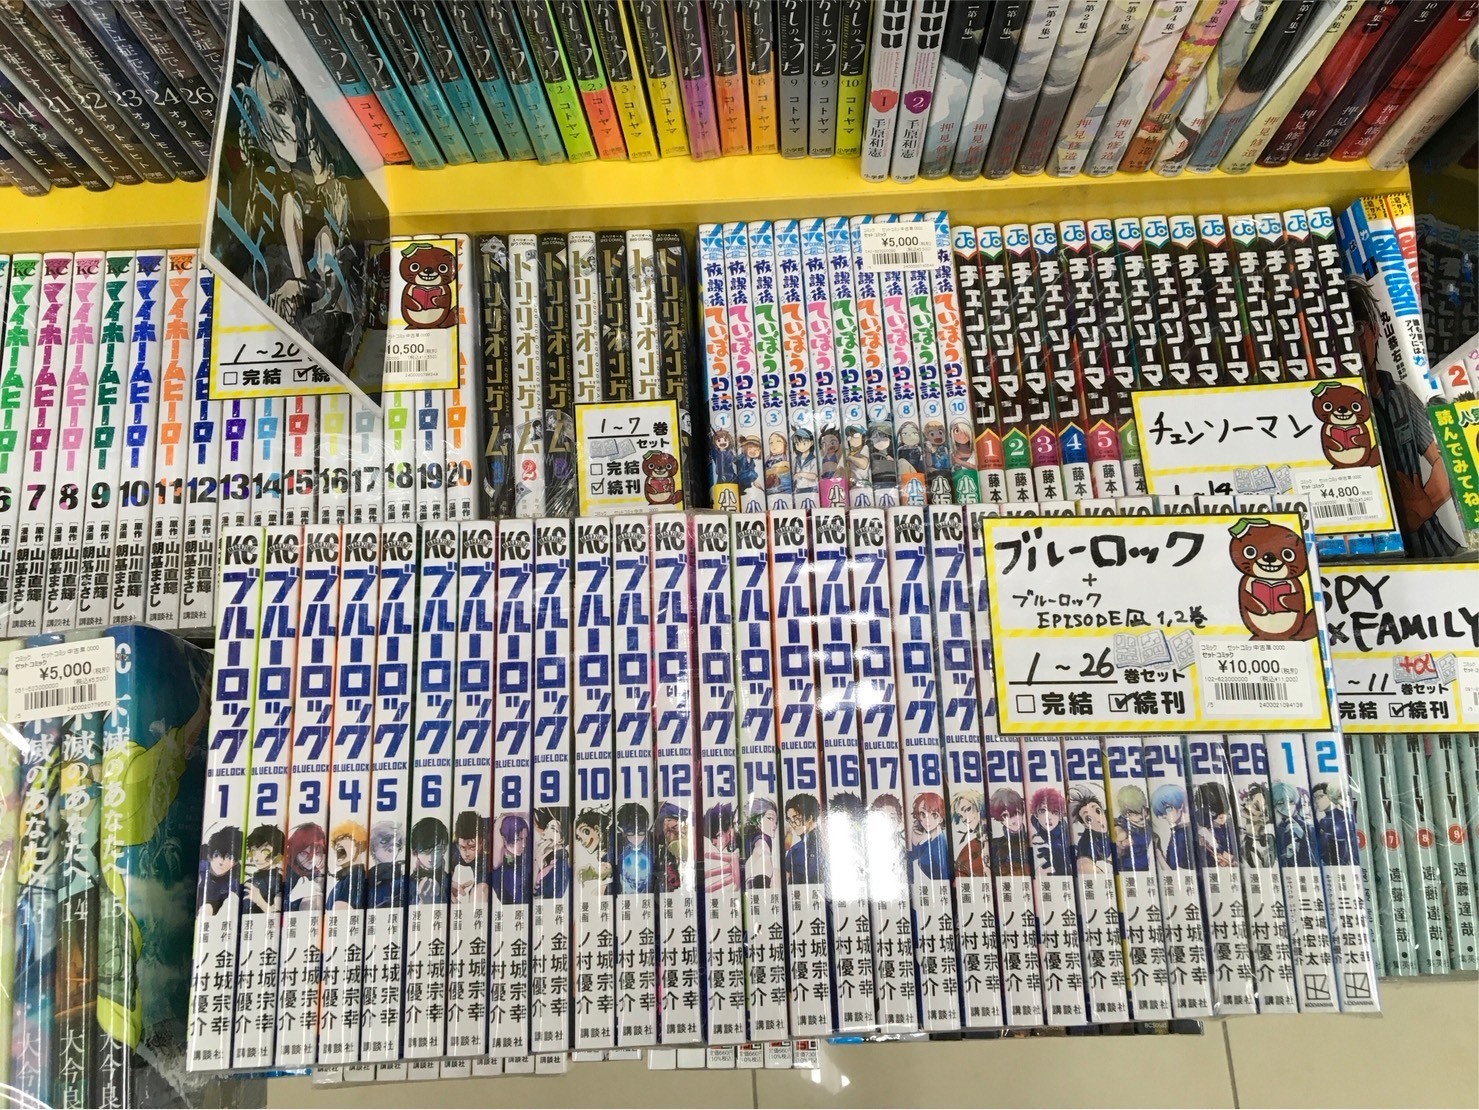 ブルーロック』1〜26巻 『ブルーロック-EPISODE凪-』1〜2巻 を買い取ら